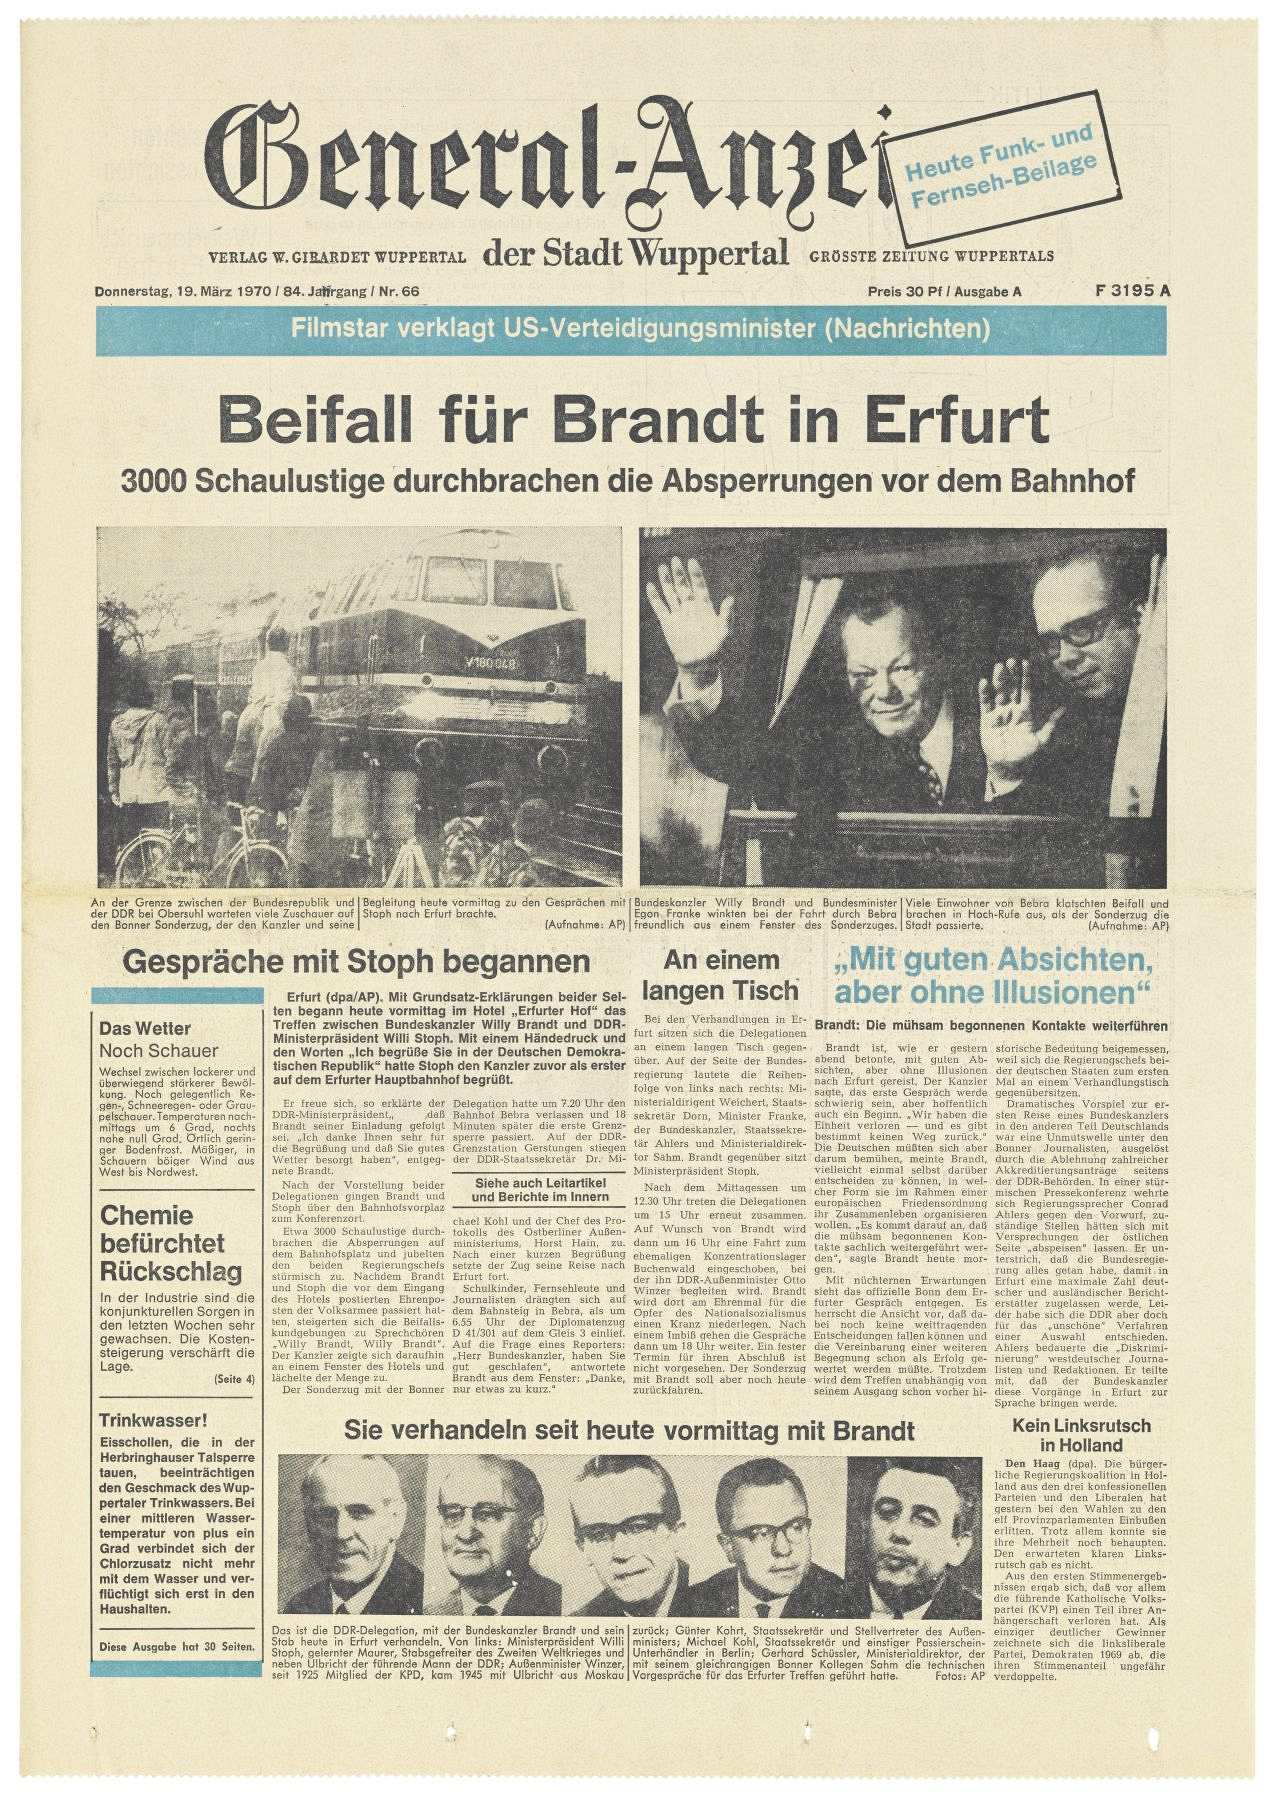 Titelseite des General-Anzeigers der Stadt Wuppertal u.a. mit Fotos von Brandt und einem Zug sowie Schlagzeile und Untertitel: Beifall für Brandt in Erfurt. 3000 Schaulustige durchbrachen die Absperrungen vor dem Bahnhof.